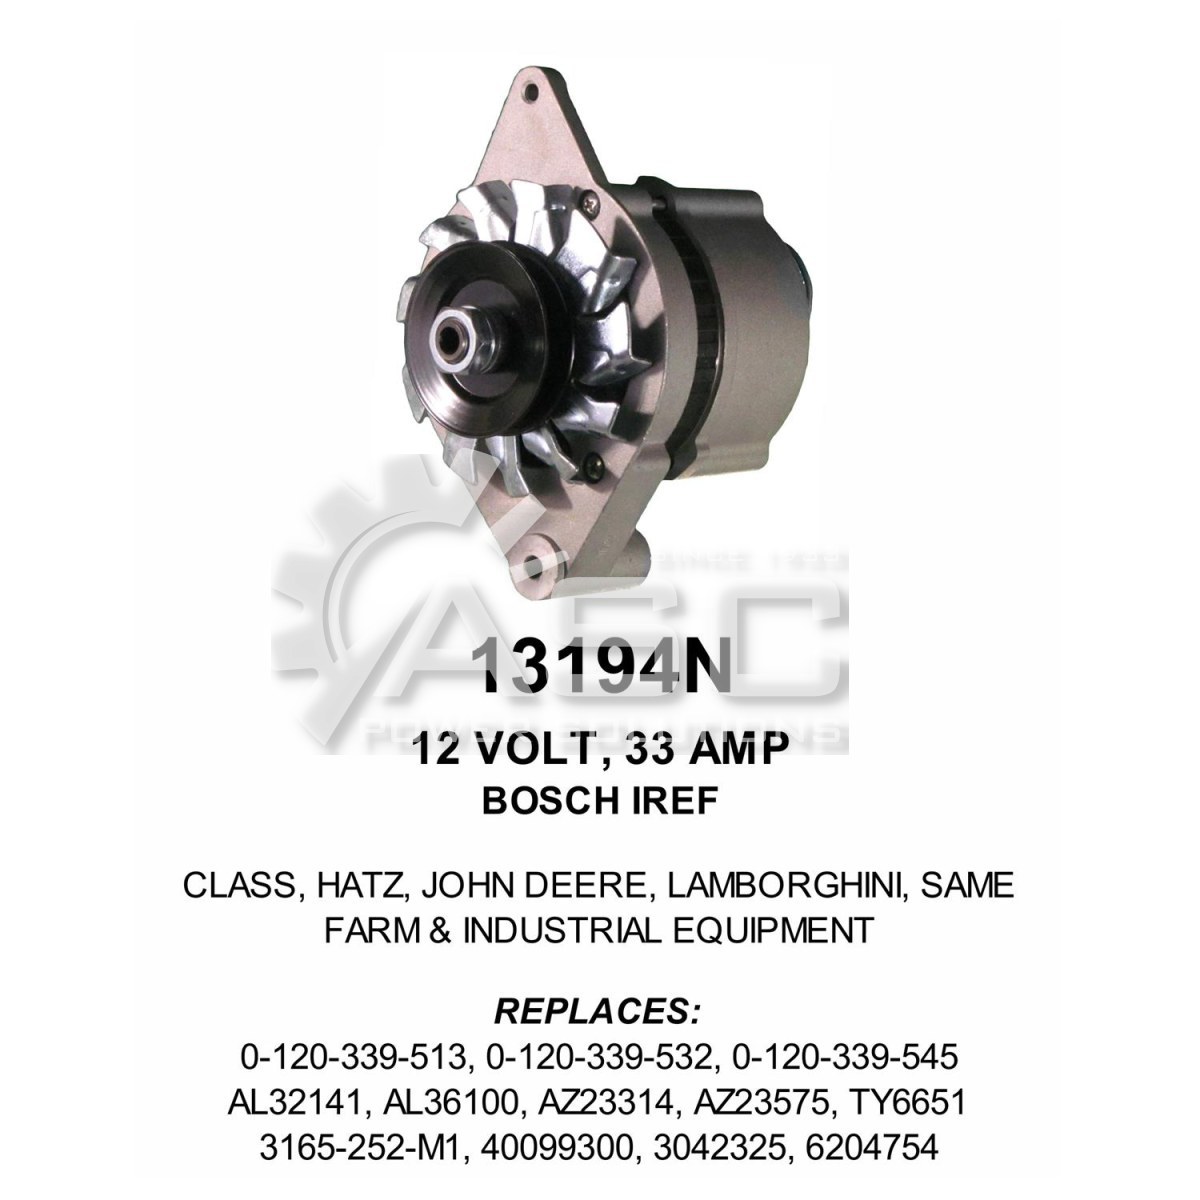 A241378_ASC, Alternator, 12V, 33 Amp, IR, EF, CW, Bosch, Reman